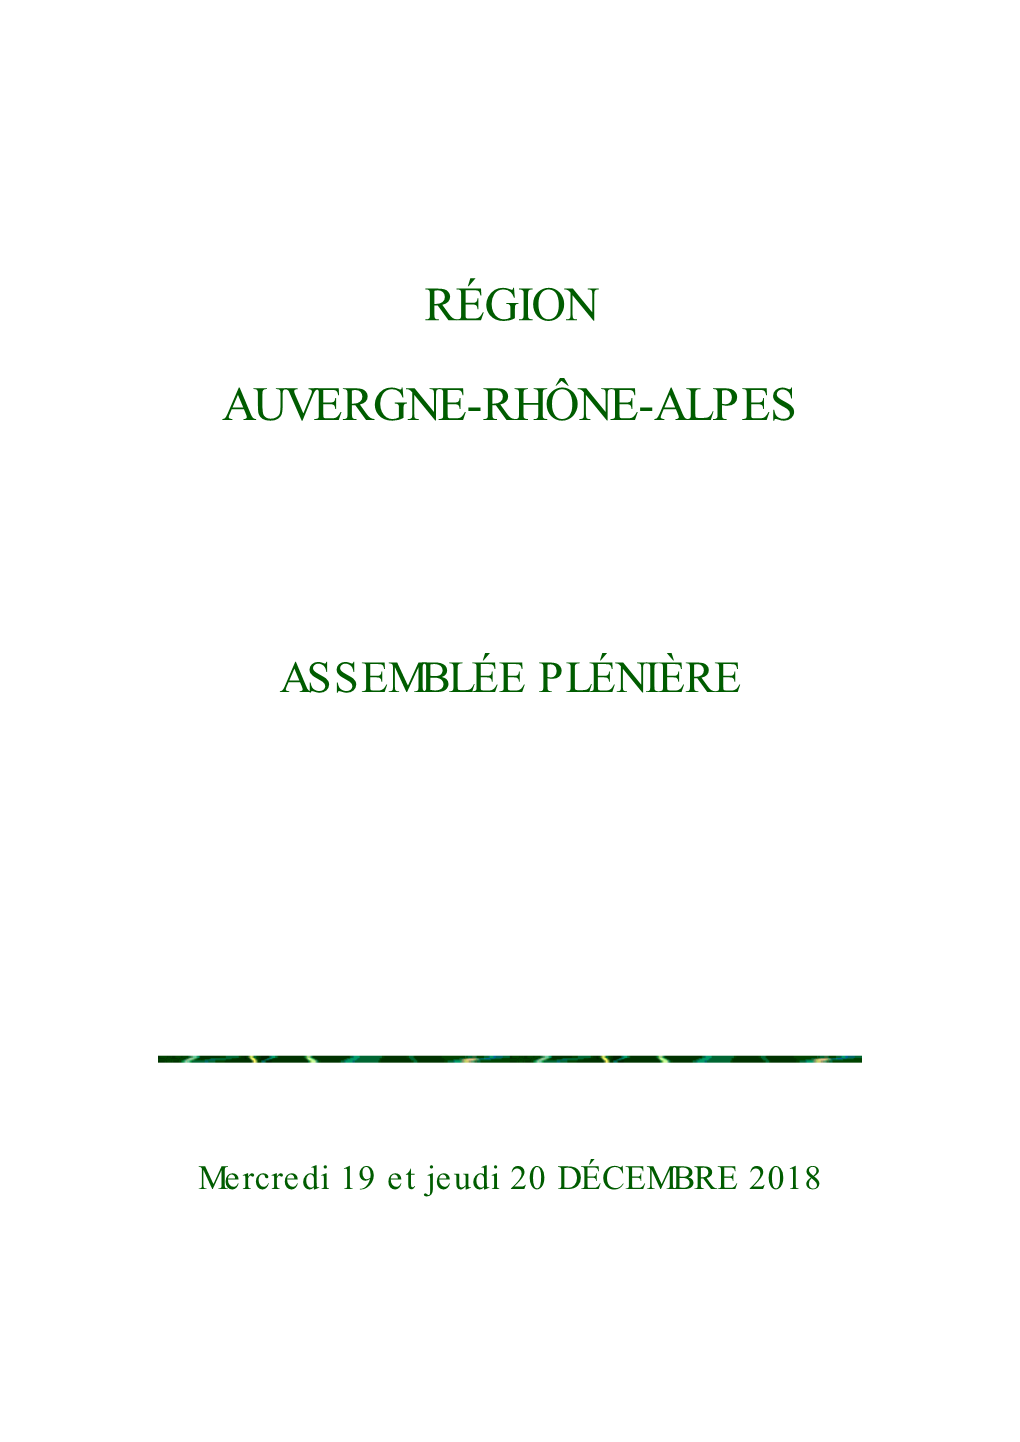 Région Auvergne-Rhône-Alpes En Matière D’Égalité Femmes Hommes Ne Se Limite Pas À Ses Agents , Elle S'étend À L'ensemble De Ses Habitants